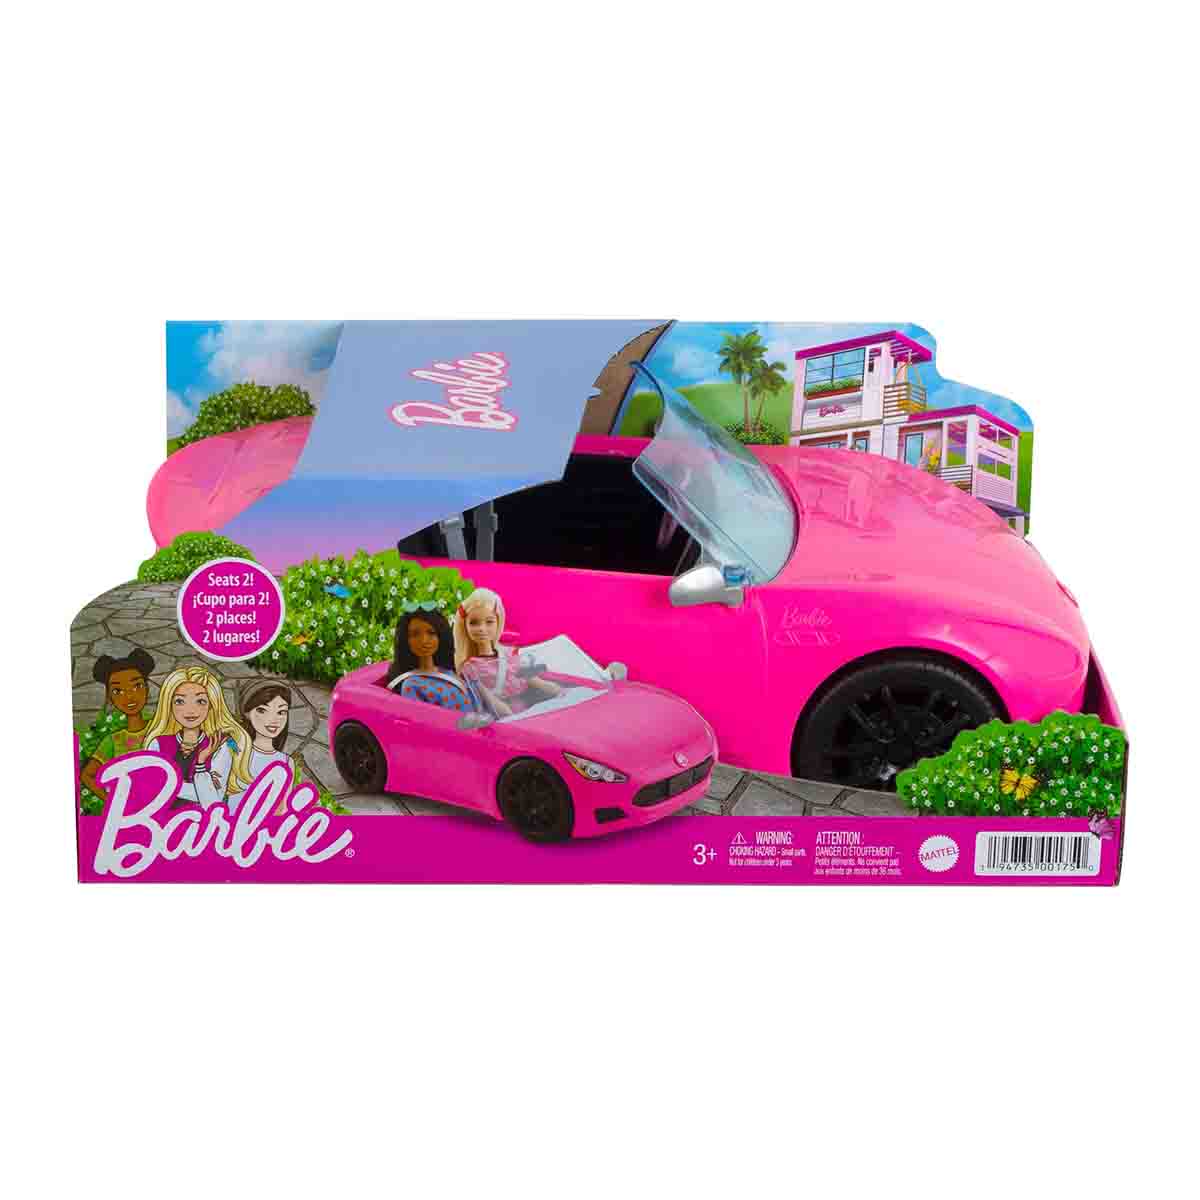 Patines de 4 ruedas The Baby Shop Puppy Barbie para niña